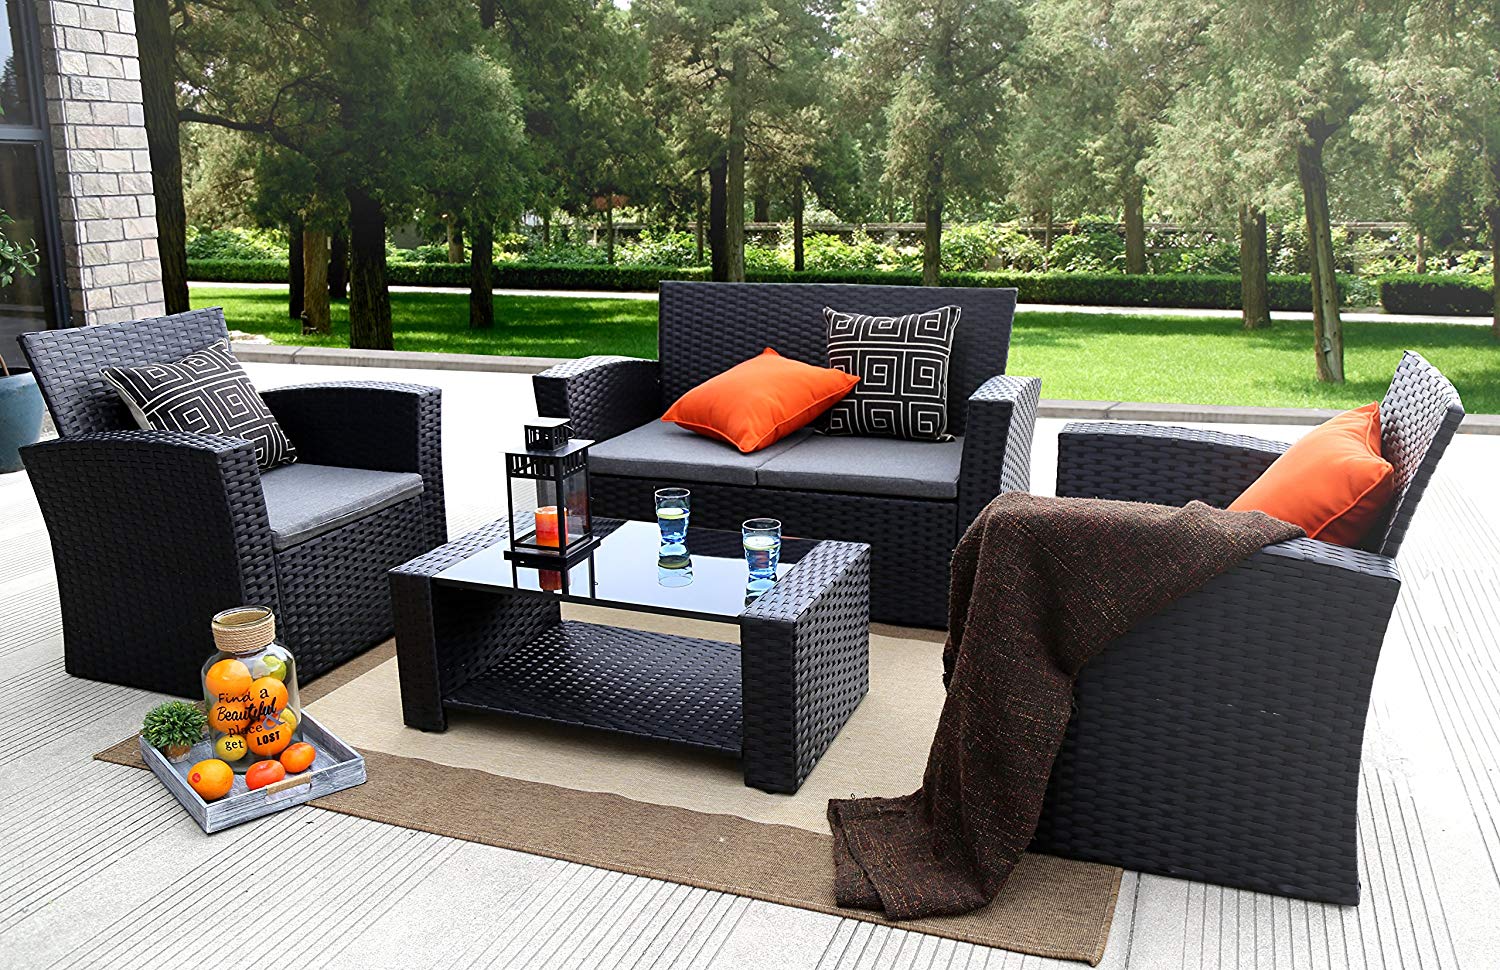 outdoor garden furniture amazon.com: baner garden (n87) 4 pieces outdoor furniture complete patio SJTOTVT